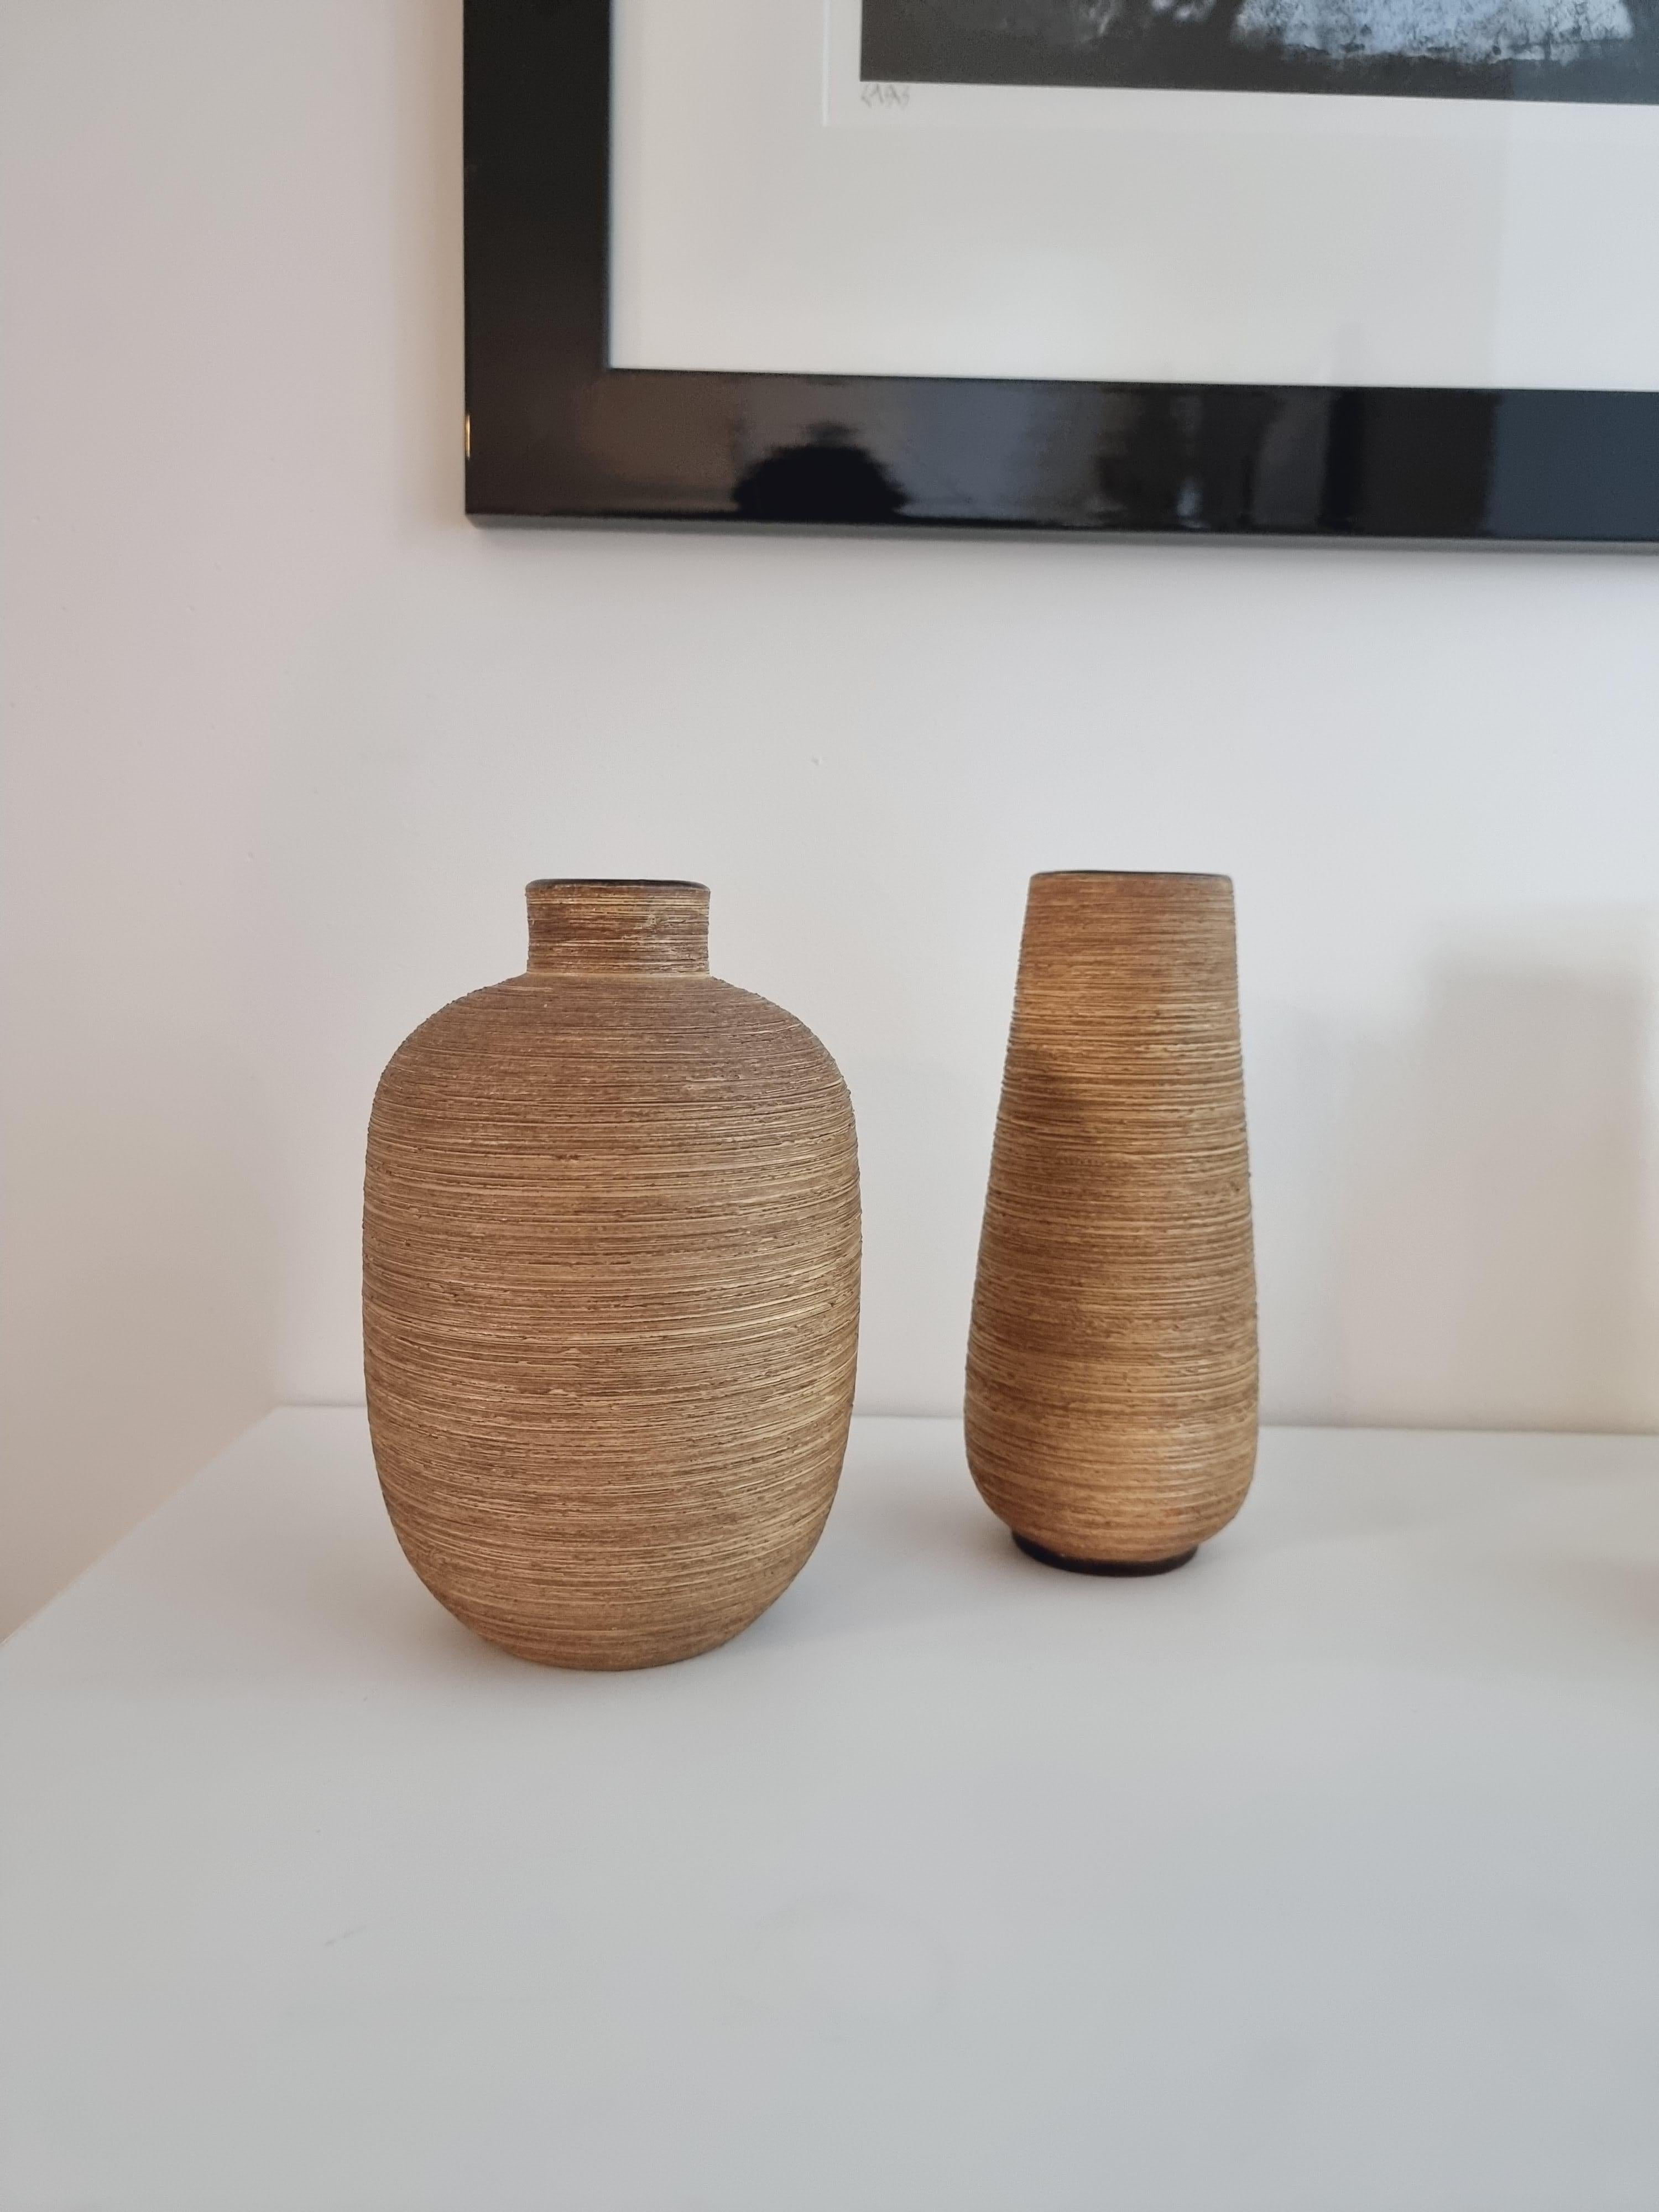 Un ensemble de deux vases, avec une structure organique chaleureuse. Signé Ekeby, conçu par Greta Runeborg, Suède, milieu des années 1900.

Petits signes d'usure, une minime/petite bosse/perte de couleur sur un vase.

Greta Runeborg-Tell